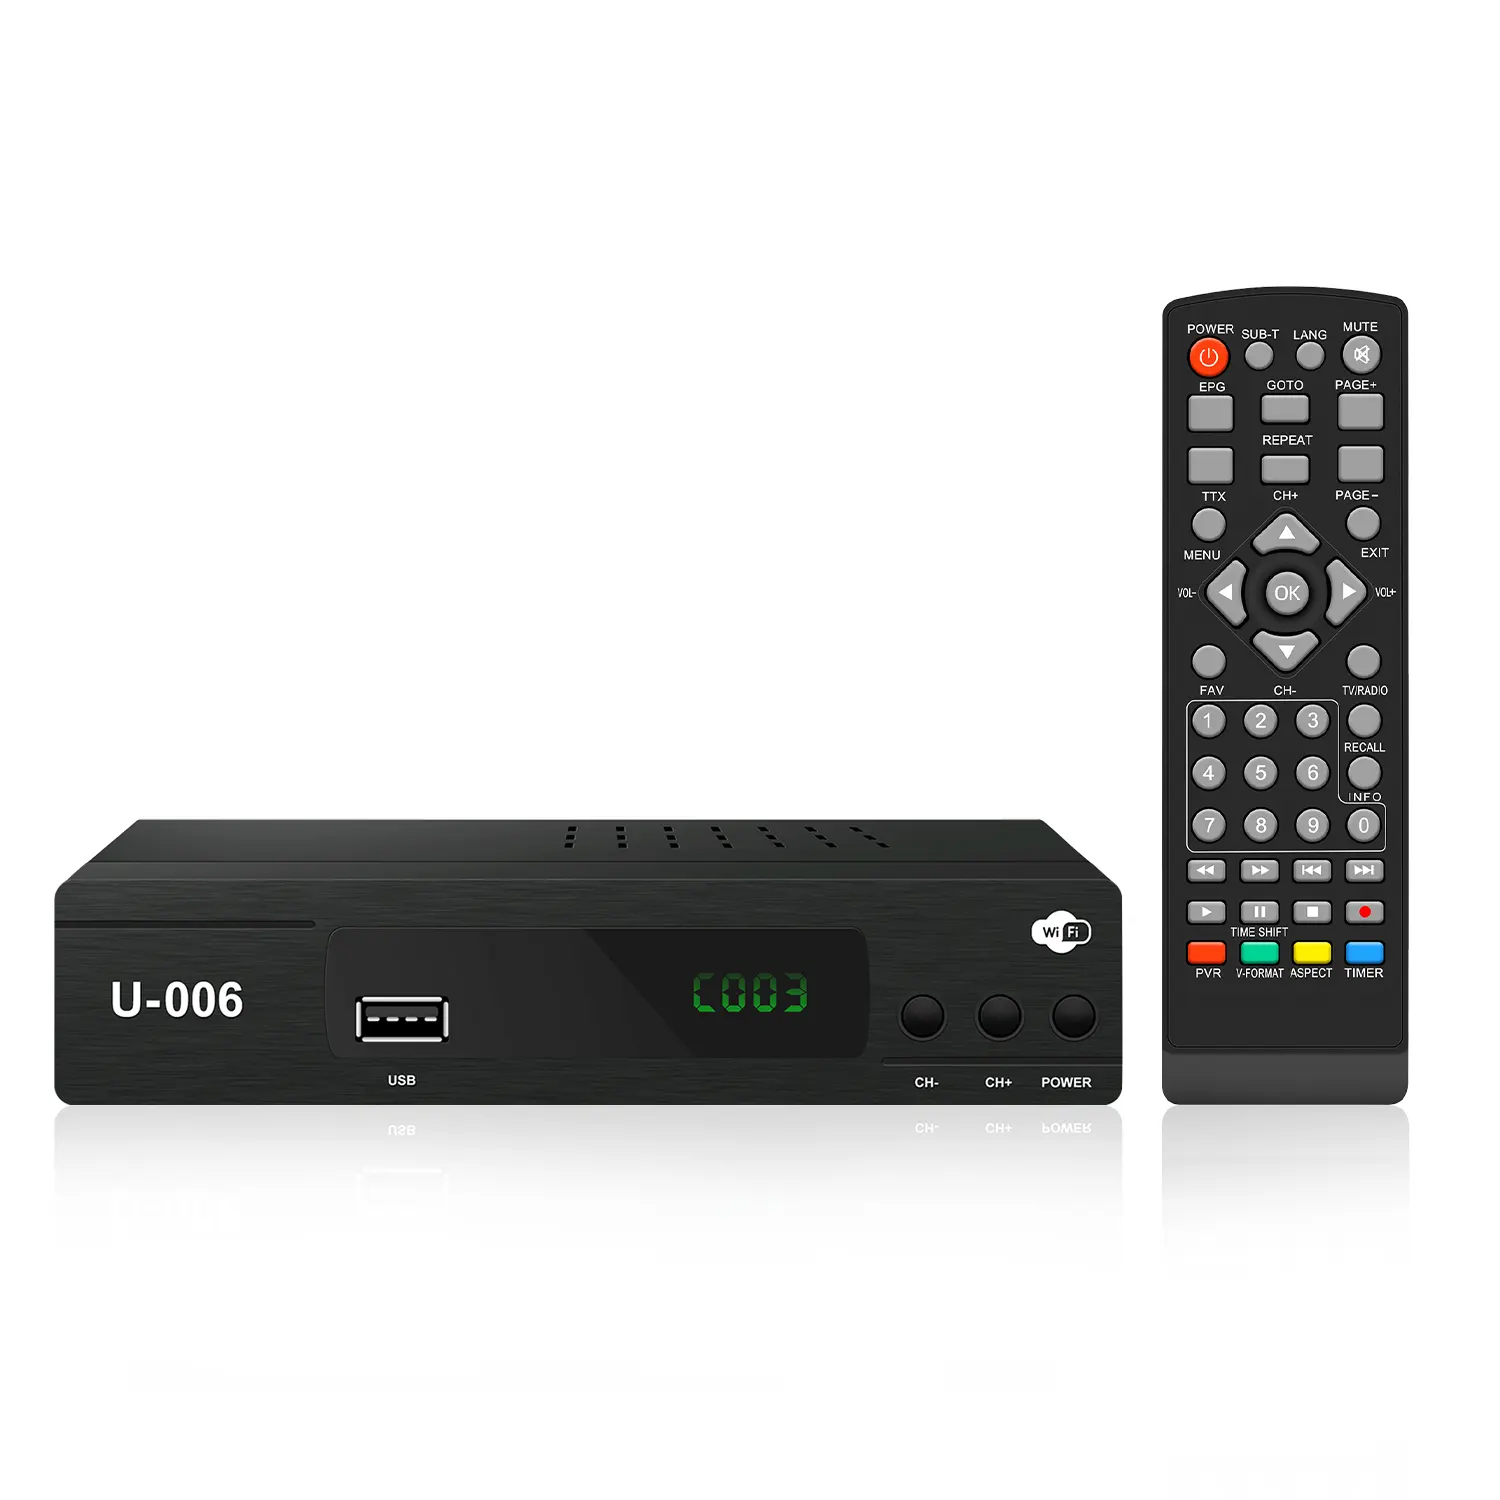 新しいisdb-tデジタルテレビボックスiisdb-tセットトップボックスwifi HDTVと写真音楽とビデオ